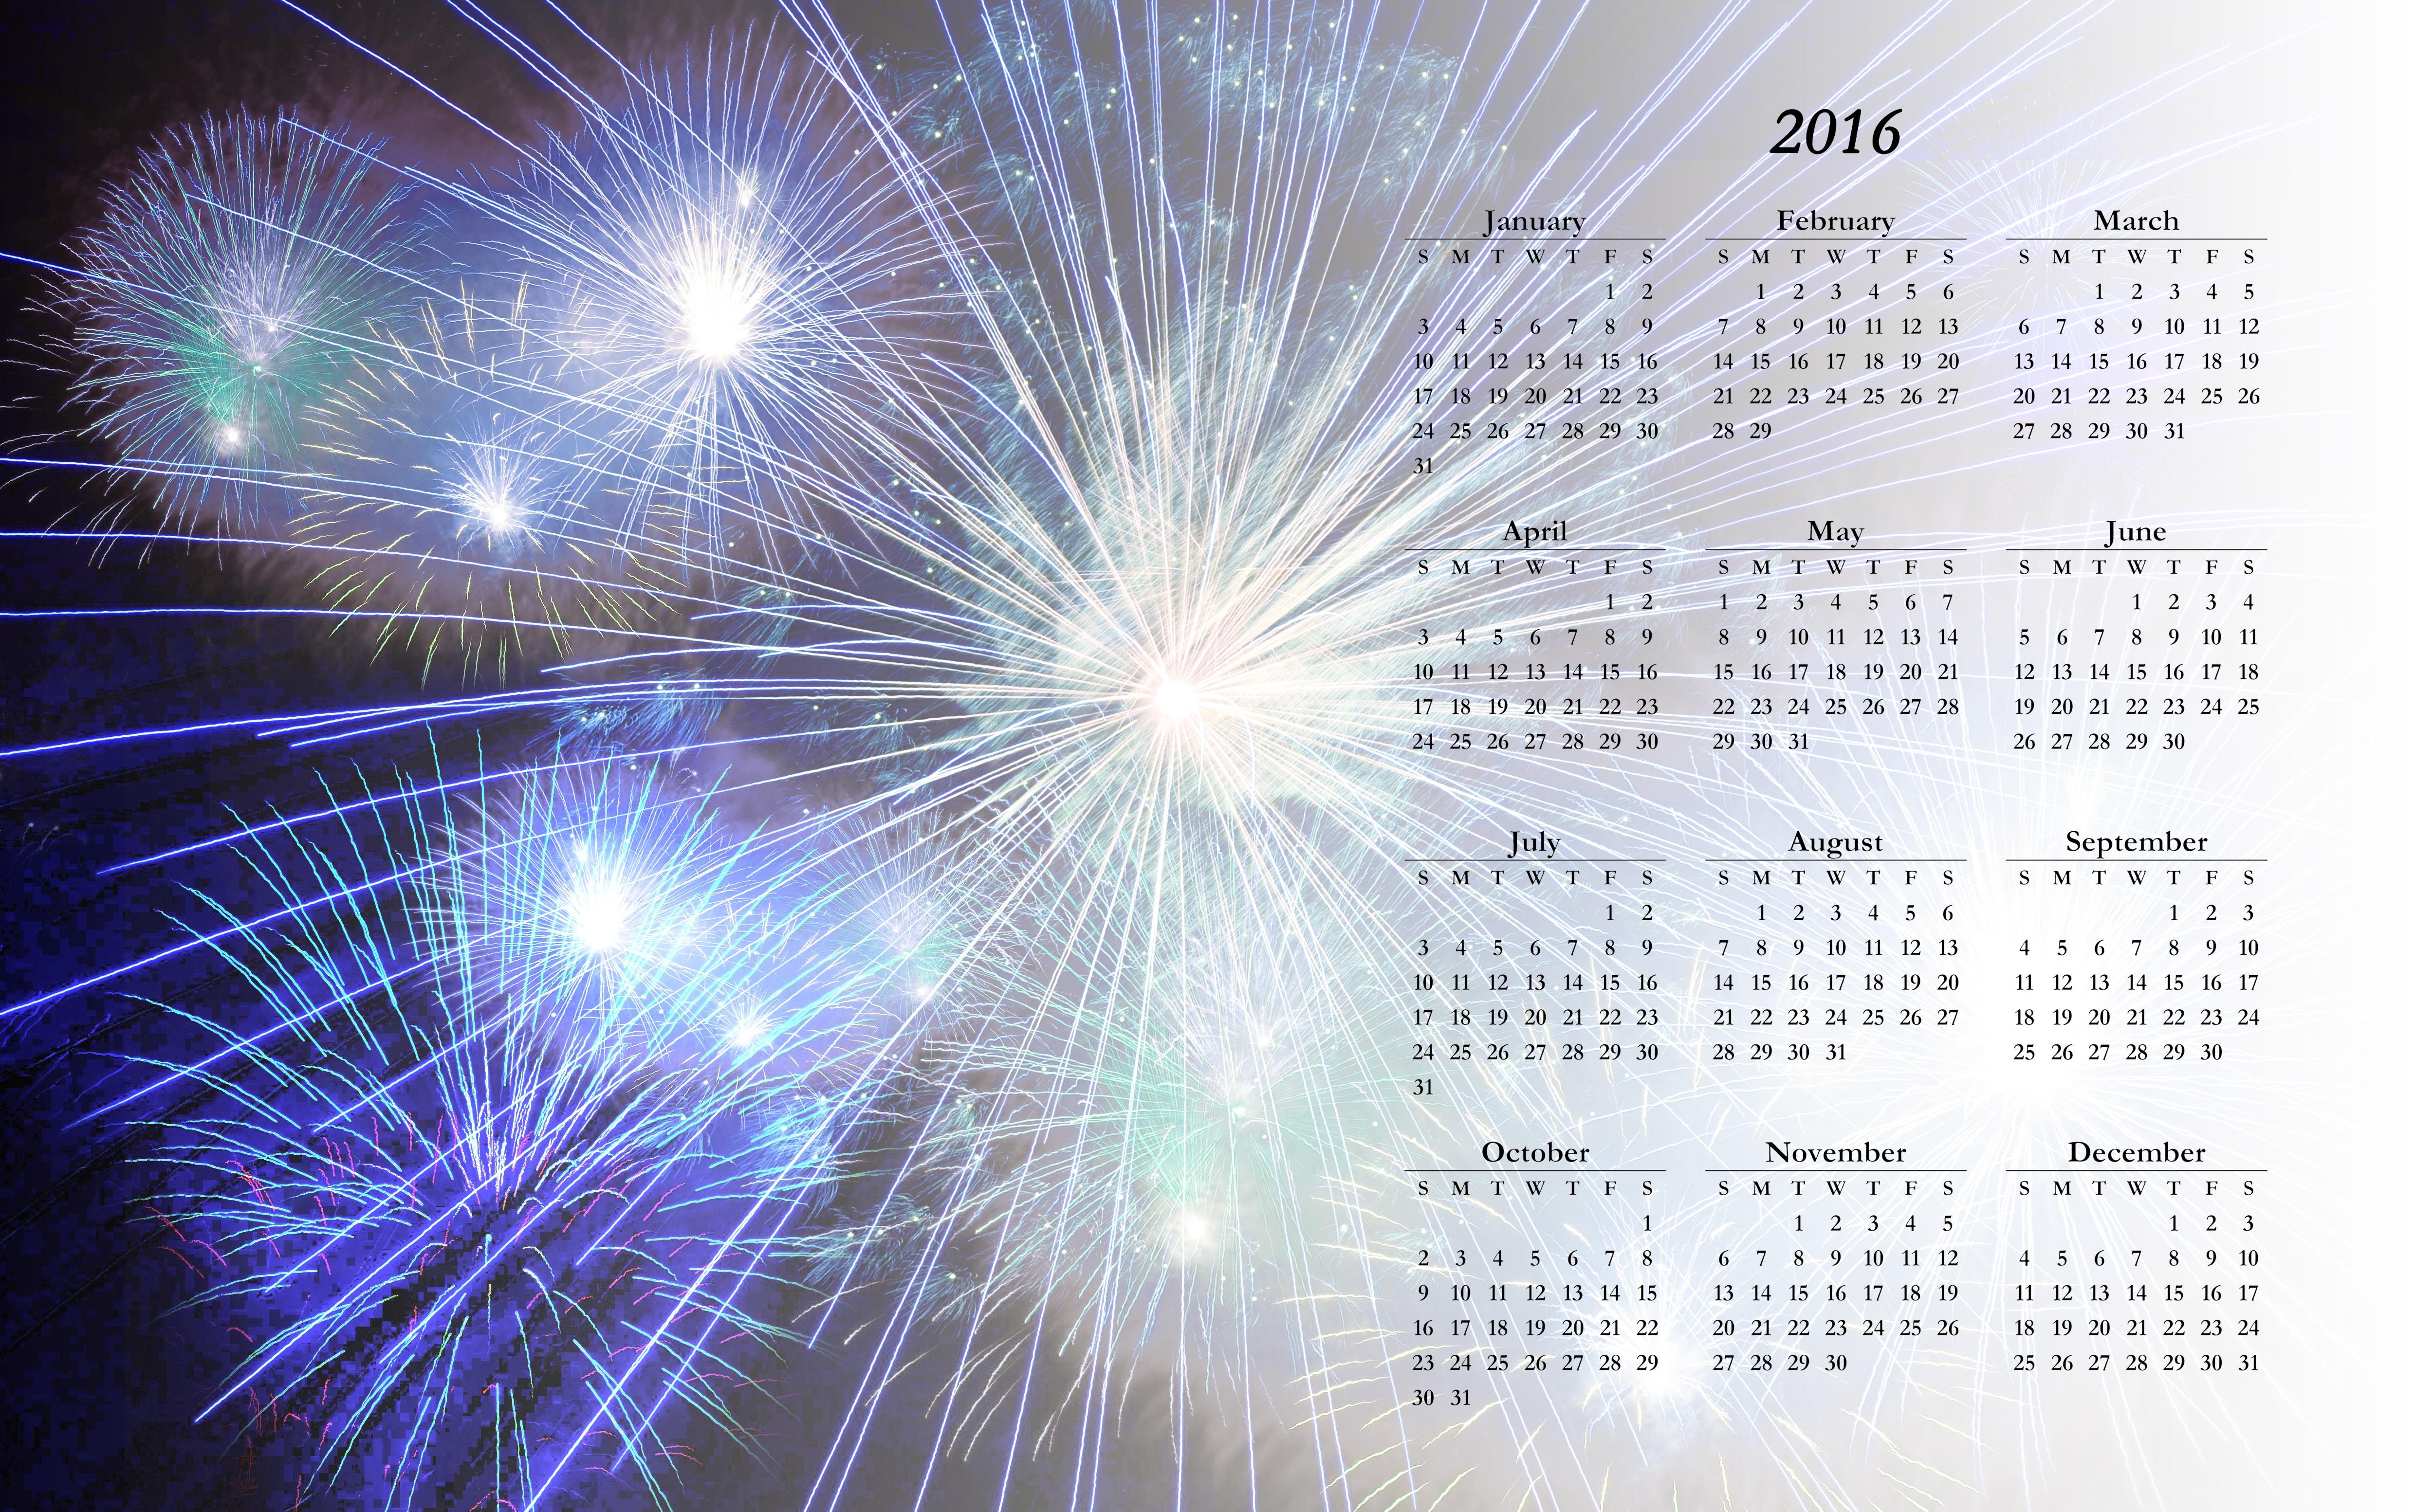 2016 Computer Calendar by Gerd Altmann